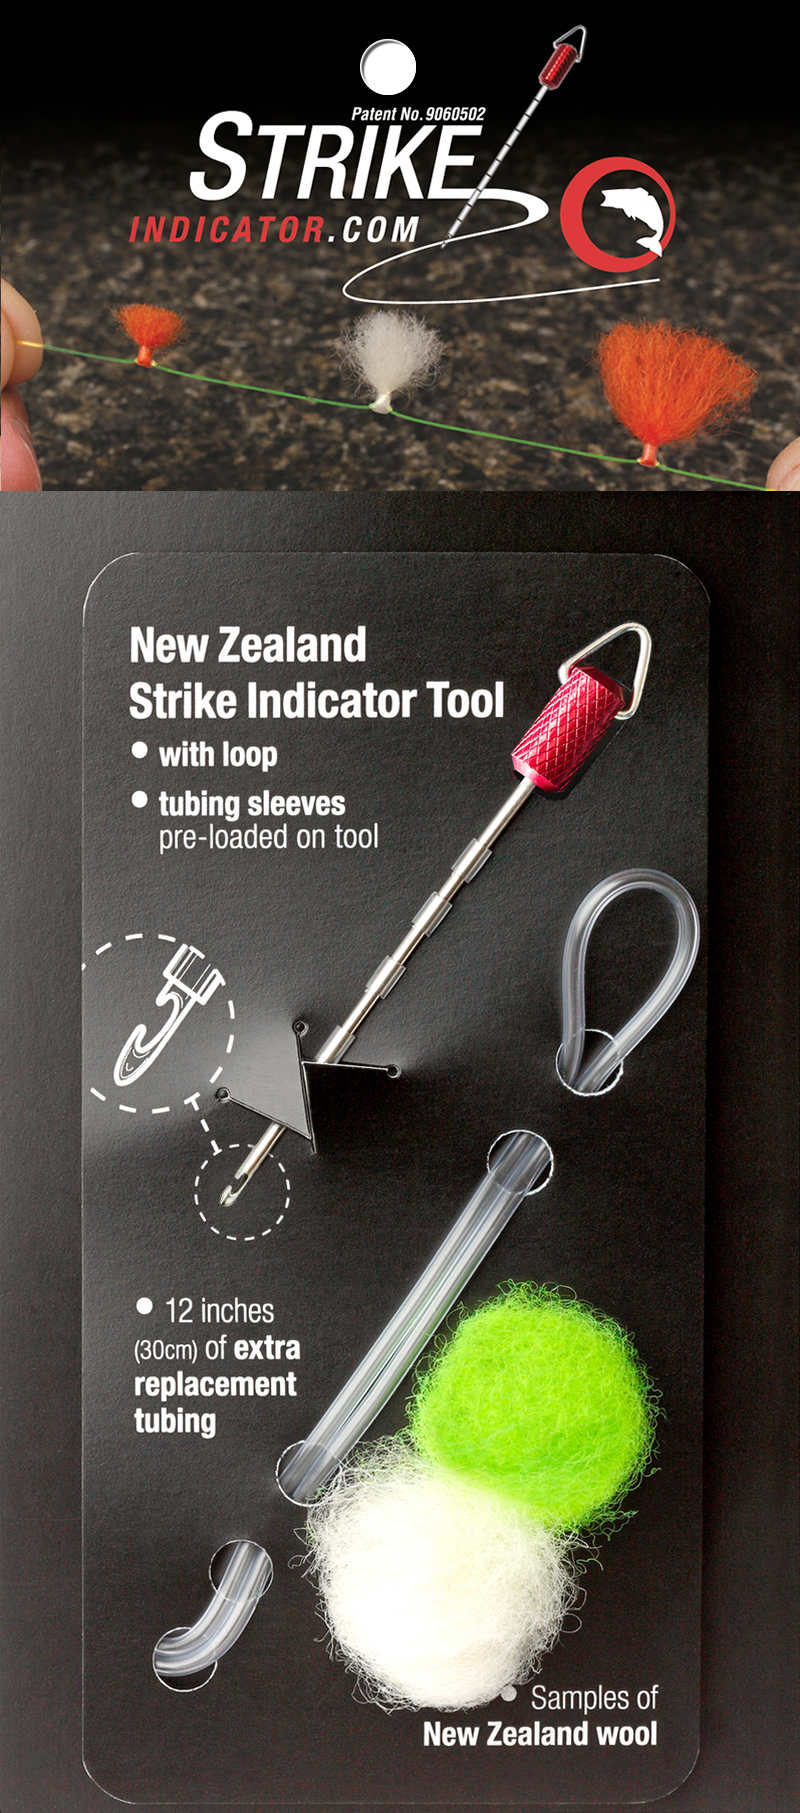 The New Zealand Strike Indicator Tool Kit